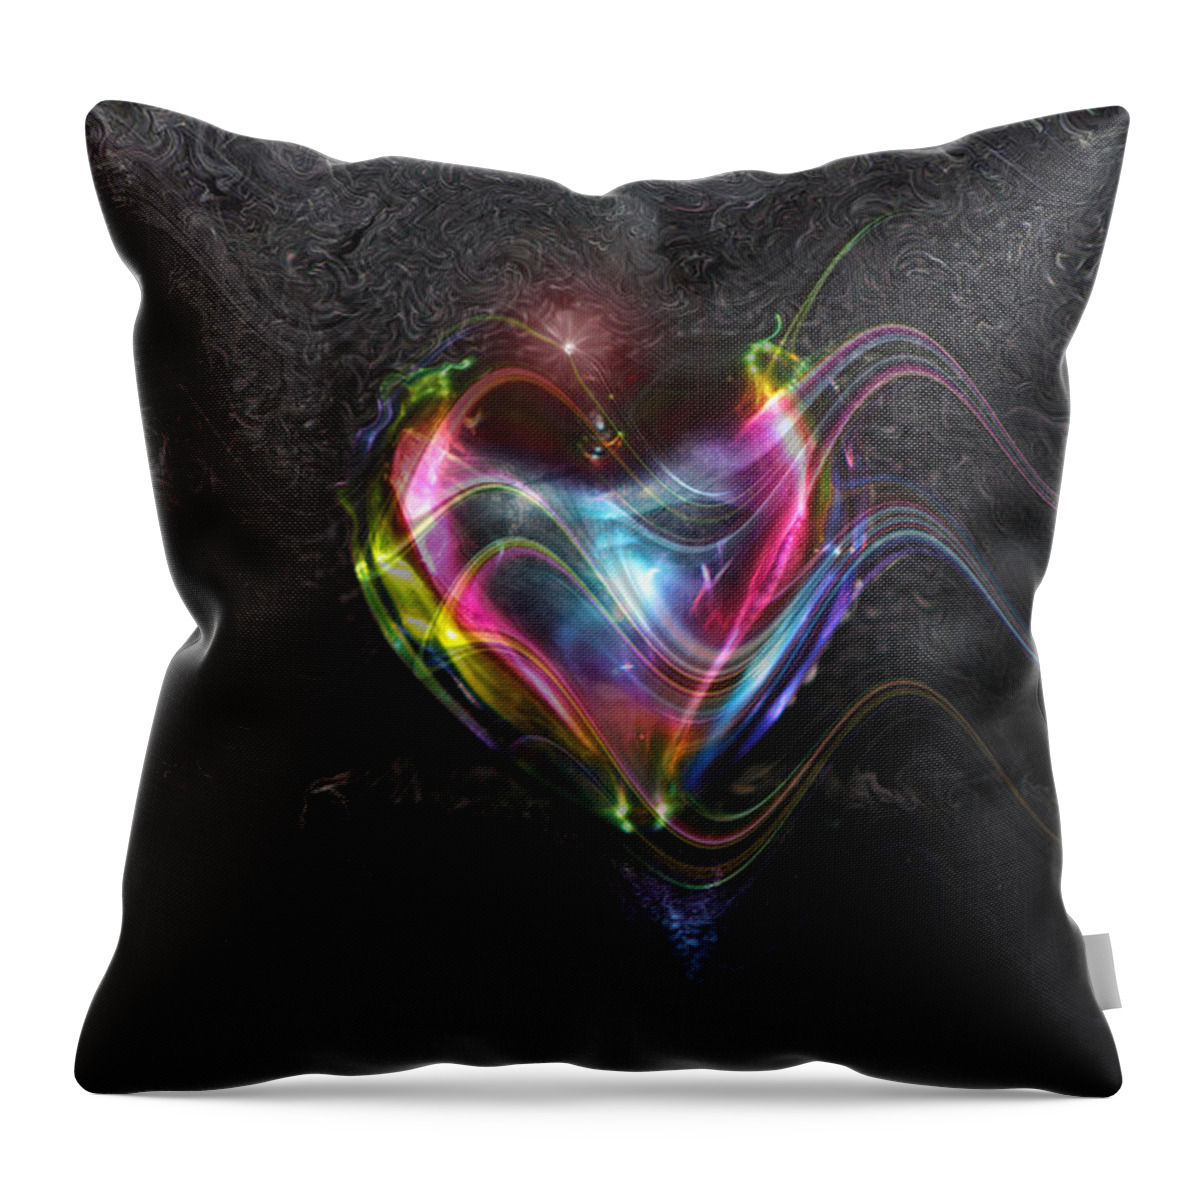 Rainbow Heart Throw Pillow featuring the photograph Rainbow Heart by Linda Sannuti